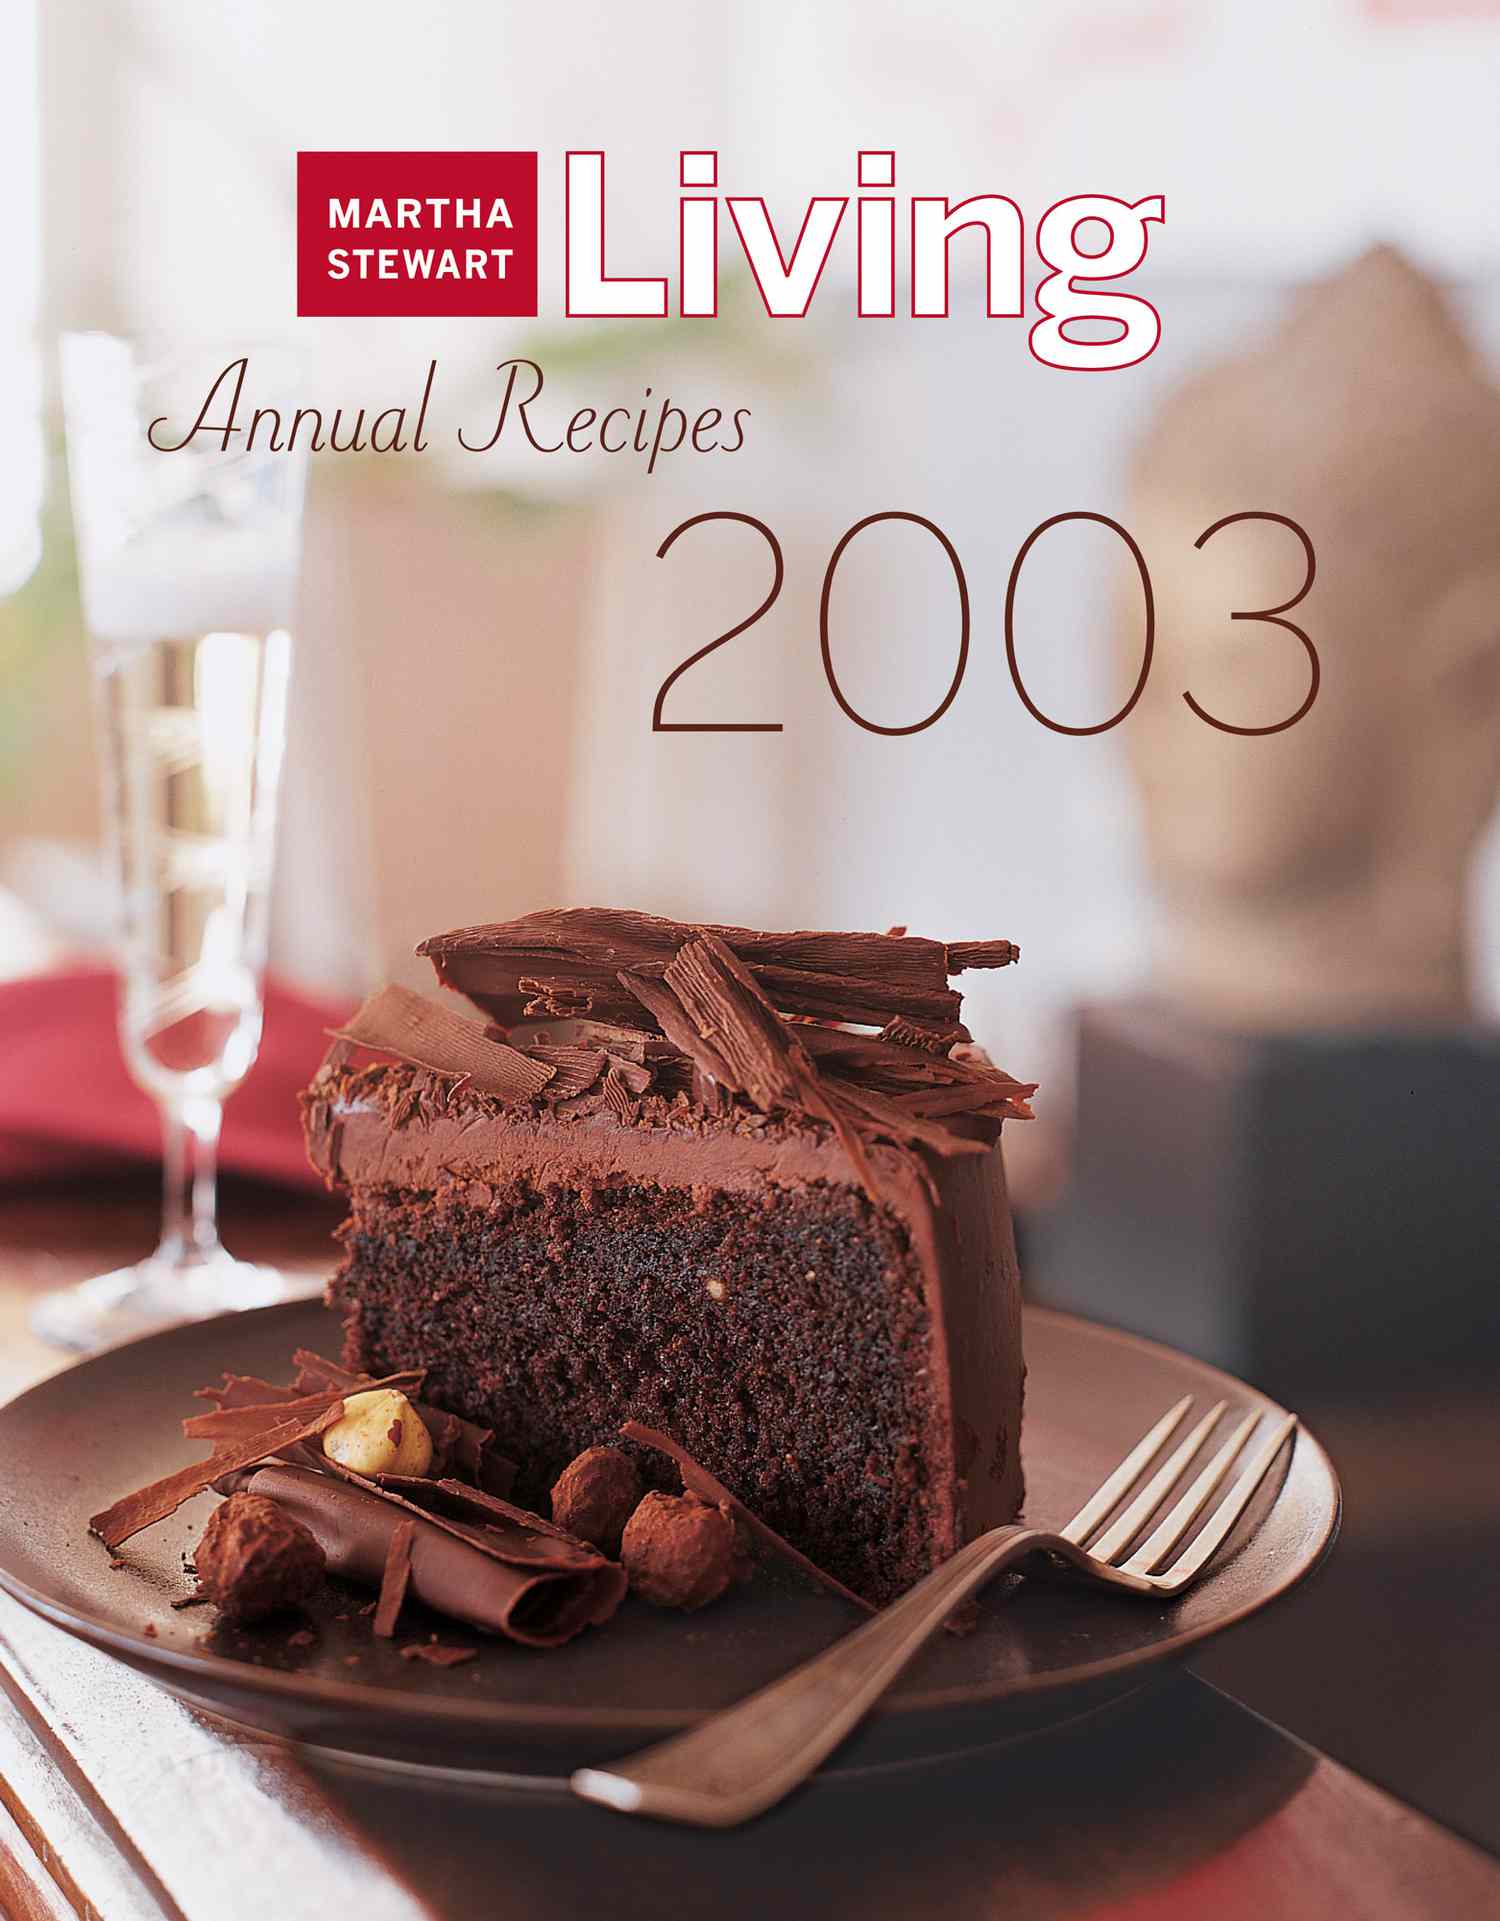 Annual Recipes 2003